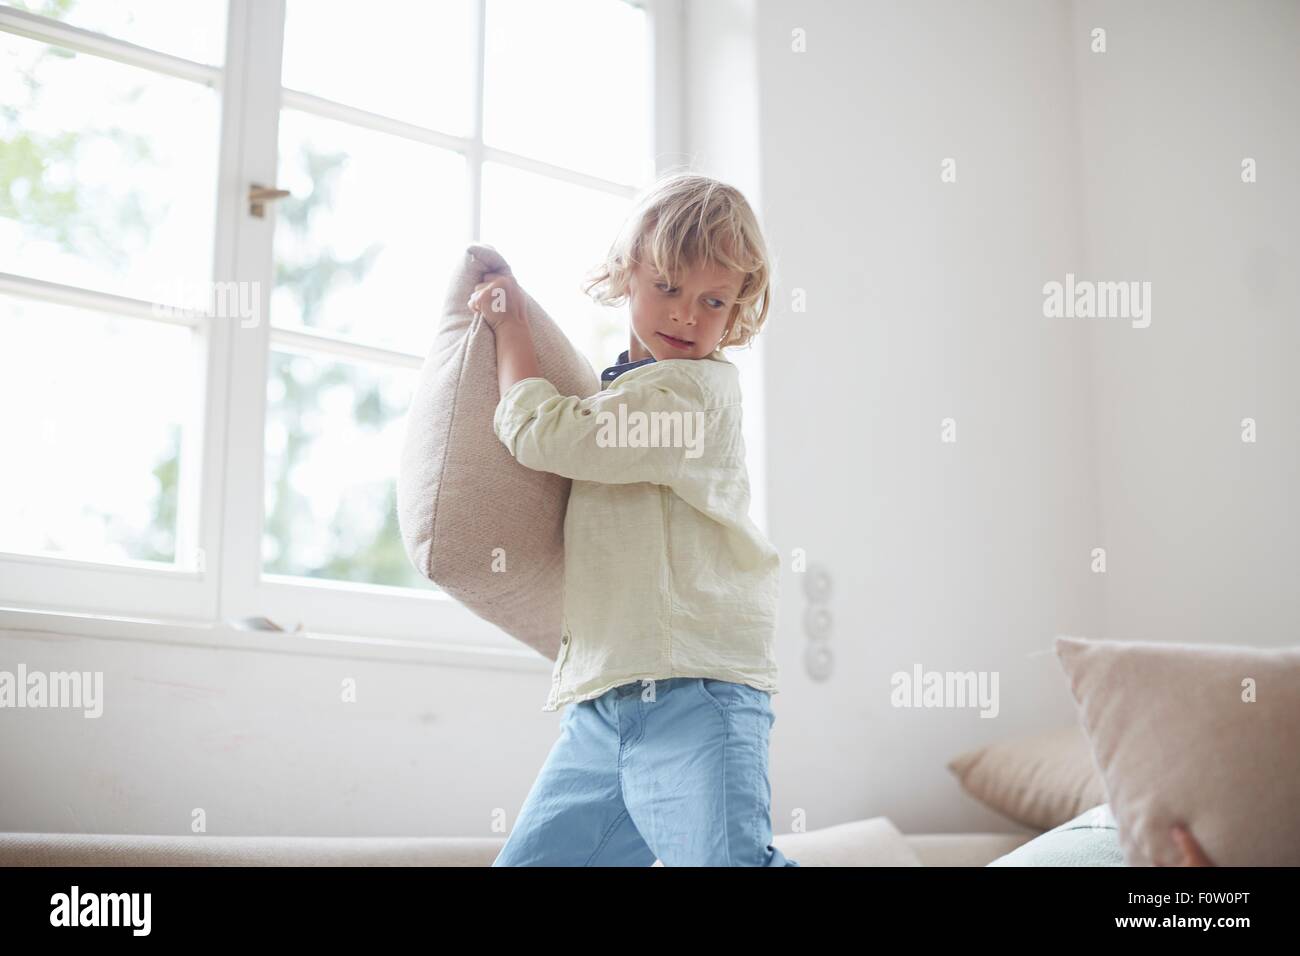 Boy holding pillow prépare à lancer Banque D'Images